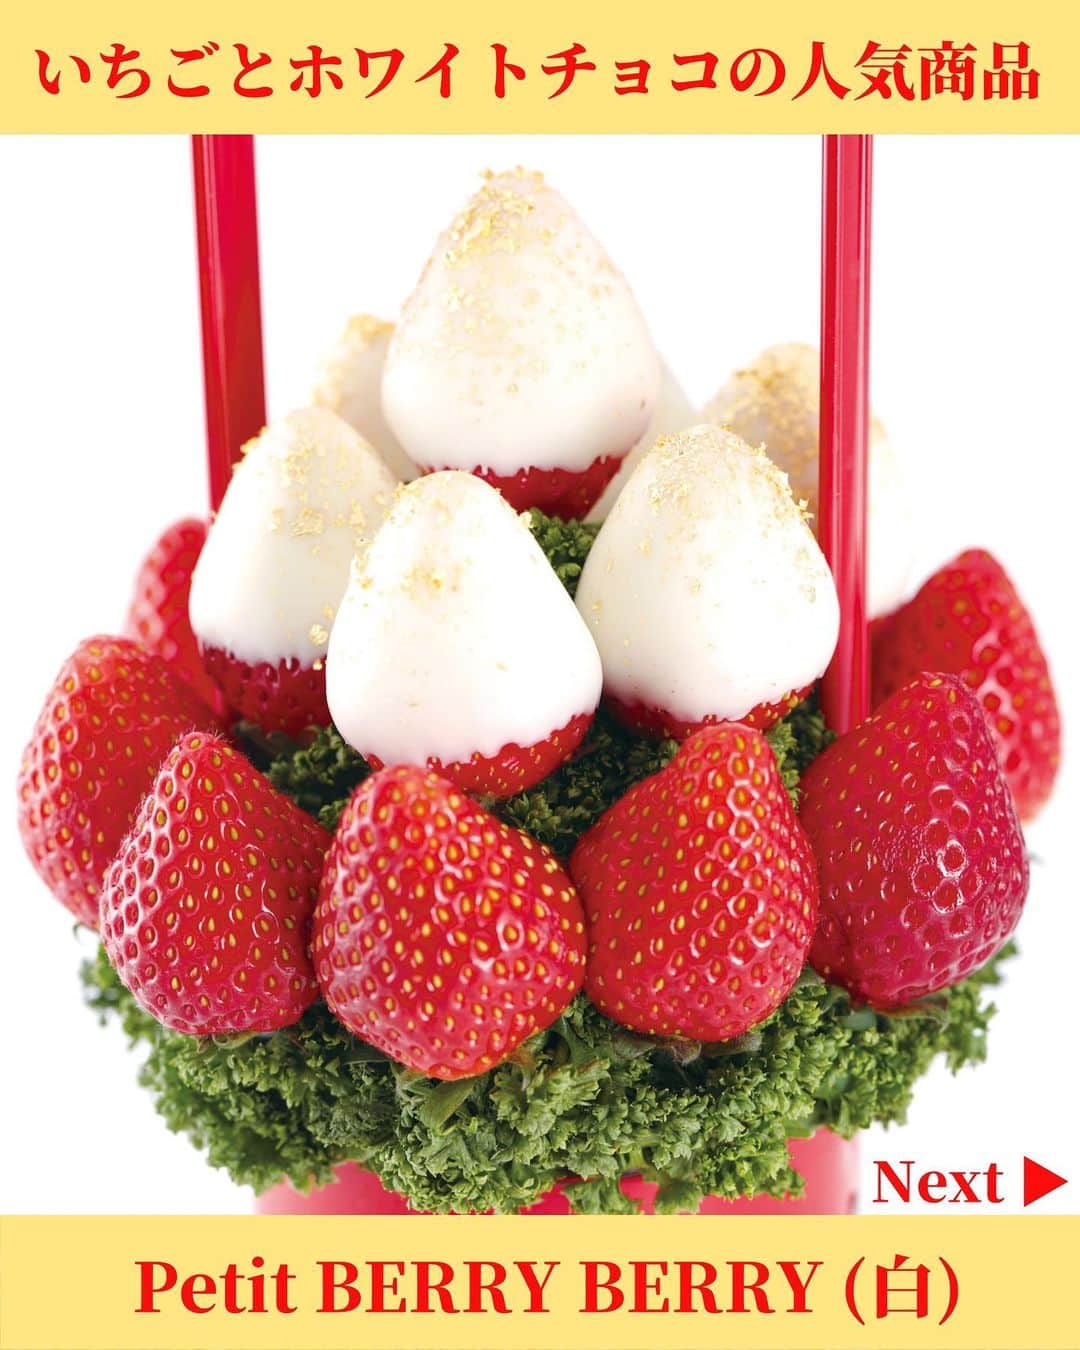 Fruit-bouquets.comのインスタグラム：「【冬季限定】Petit Berry Berry (白) 白と赤のコントラストが美しいフルーツブーケ💐  ホワイトチョコレートとイチゴのシンプルで洗練された見た目と味わいをご堪能ください🍓  #フルーツブーケ #フルーツギフト #フルーツケーキ  #誕生日プレゼント #バレンタイン #バレンタインデー  #お取り寄せスイーツ #お取り寄せグルメ  #いちご #いちごスイーツ #いちごケーキ #いちごパフェ  #フルーツパフェ #インスタ映えスイーツ  #スイーツ好きな人と繋がりたい  #バレンタインチョコ #バレンタインスイーツ  #バレンタイン限定 #バレンタインチョコレート  #バレンタインケーキ #スイーツ #スイーツ女子  .」